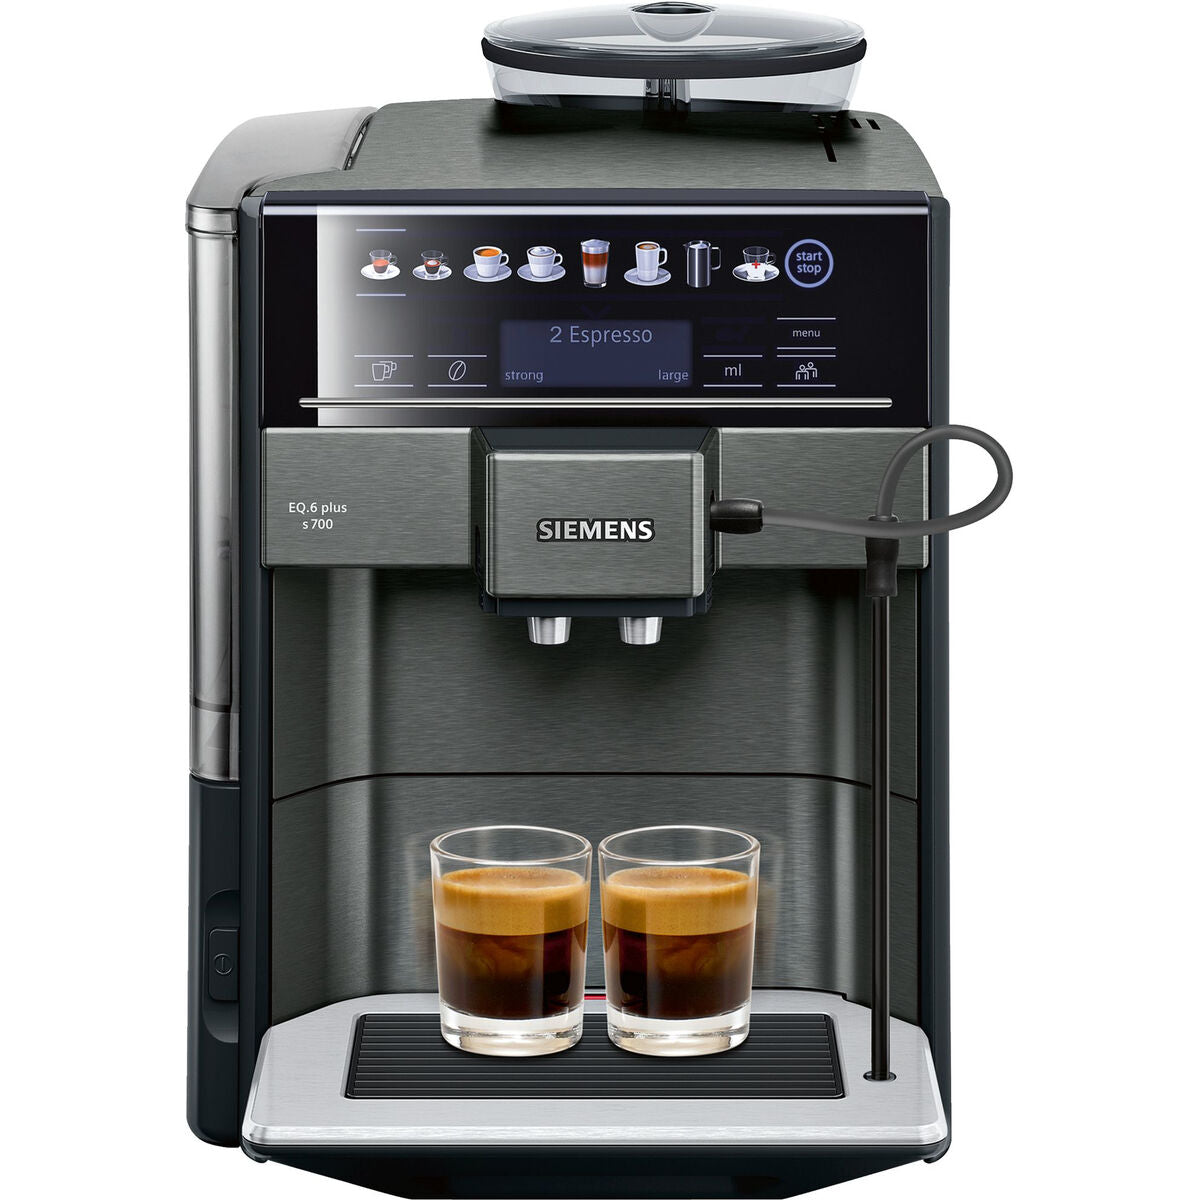 Superautomaattinen kahvinkeitin Siemens AG TE657319RW Musta Harmaa 1500 W 2 Puodeliai 1,7 L